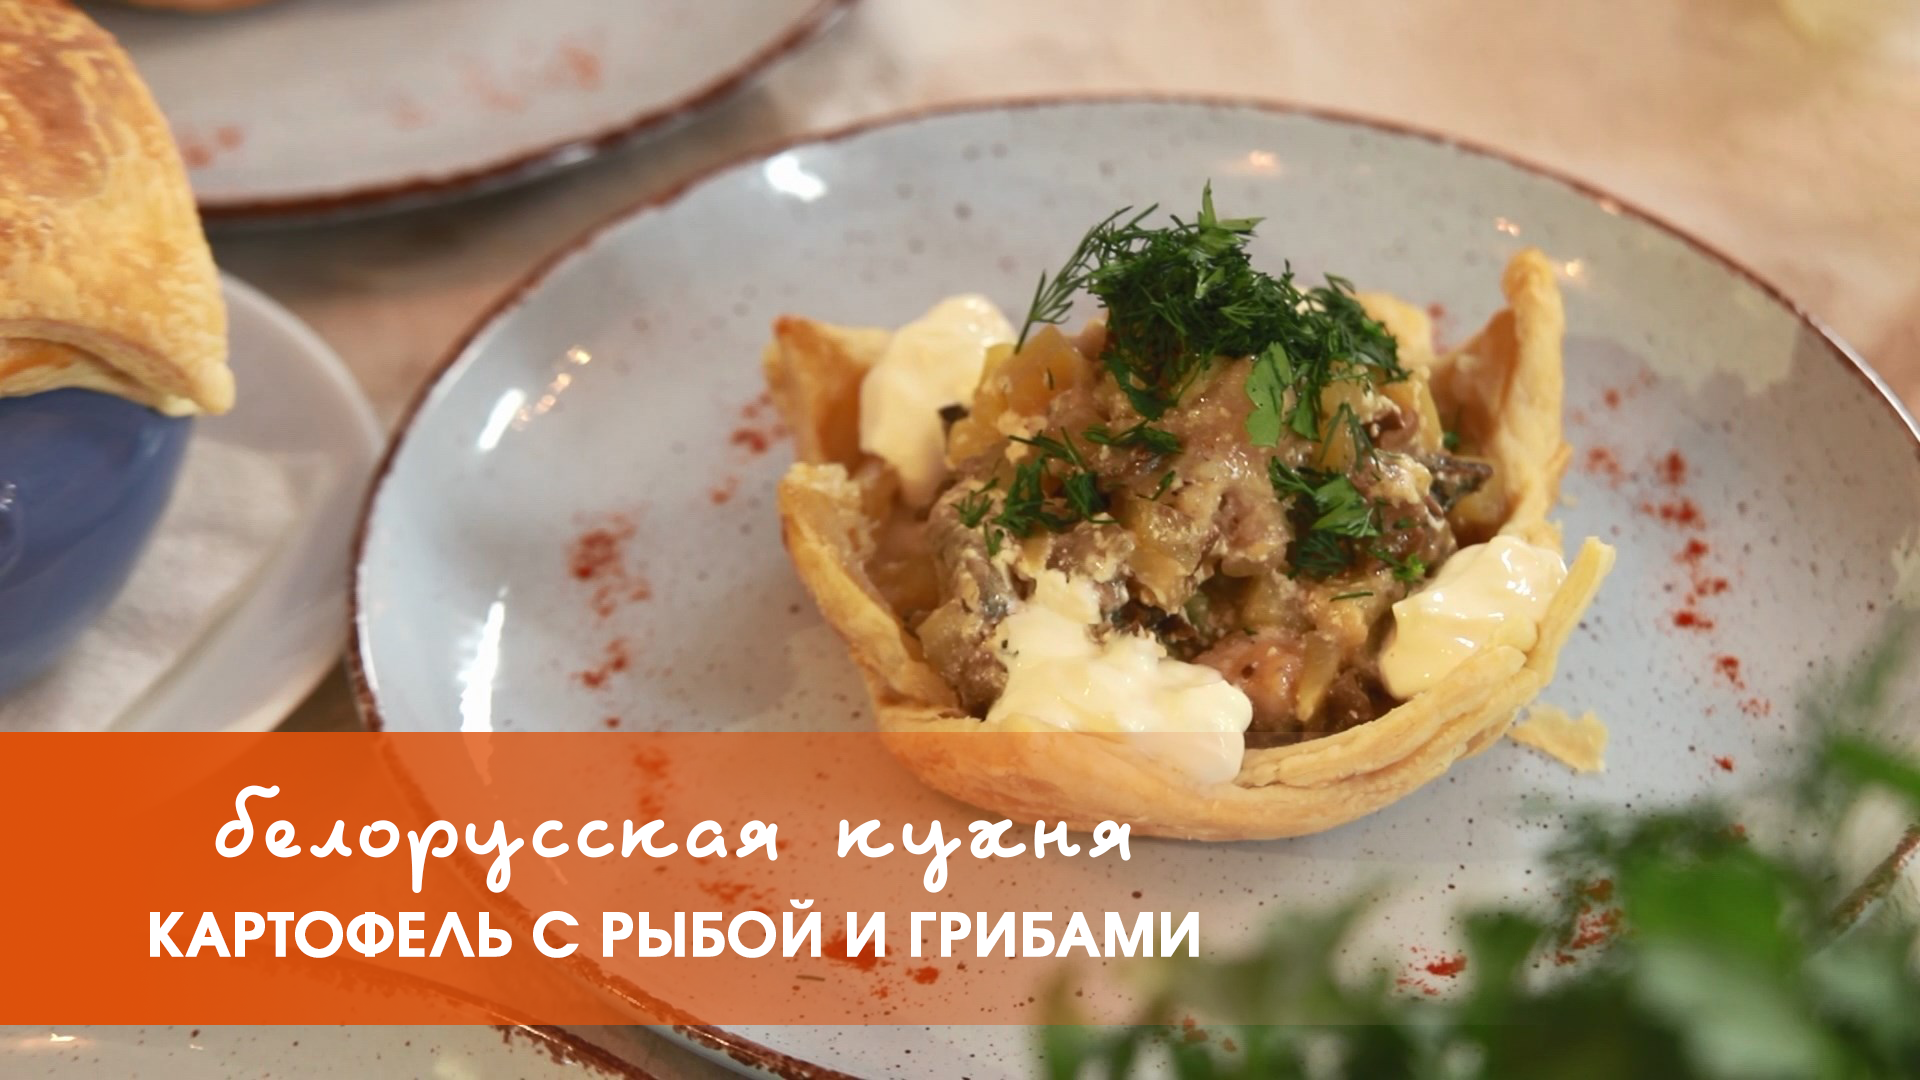 Белорусская кухня: картофель с рыбой и грибами